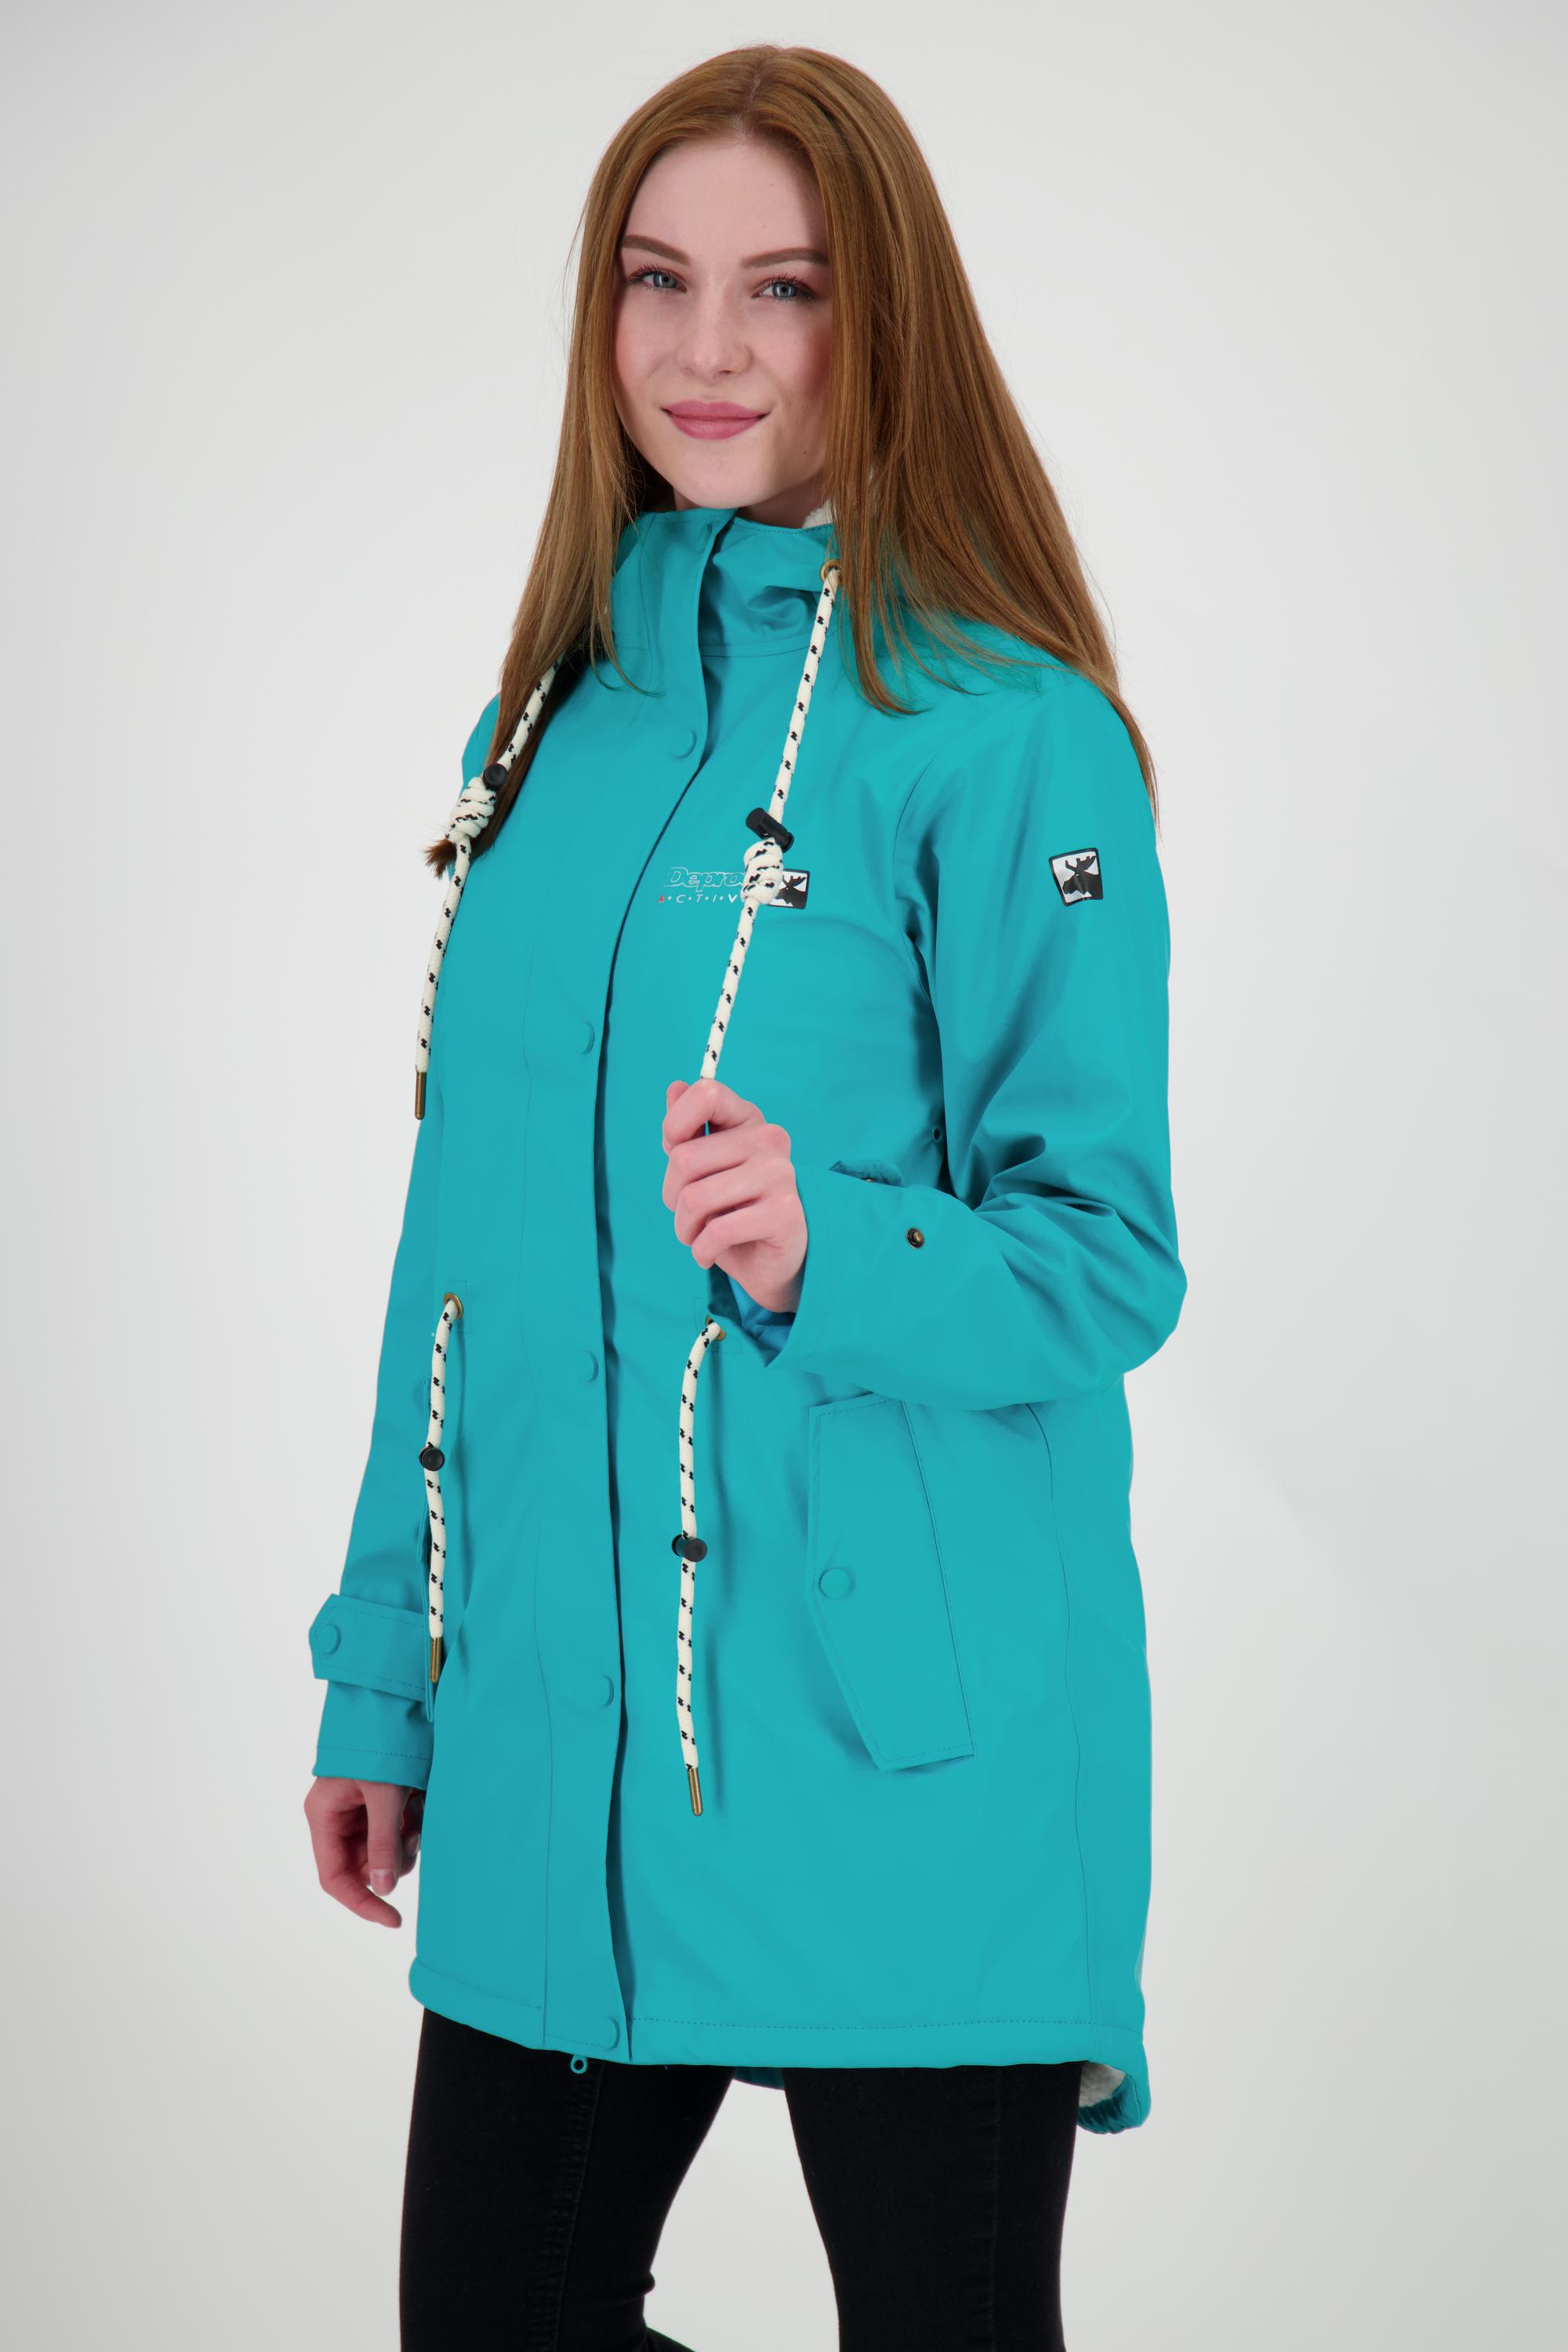 ELLESMERE im active WOMEN Regenjacke von kaufen Damen SportScheck DEPROC Shop turquoise Online Friesennerz